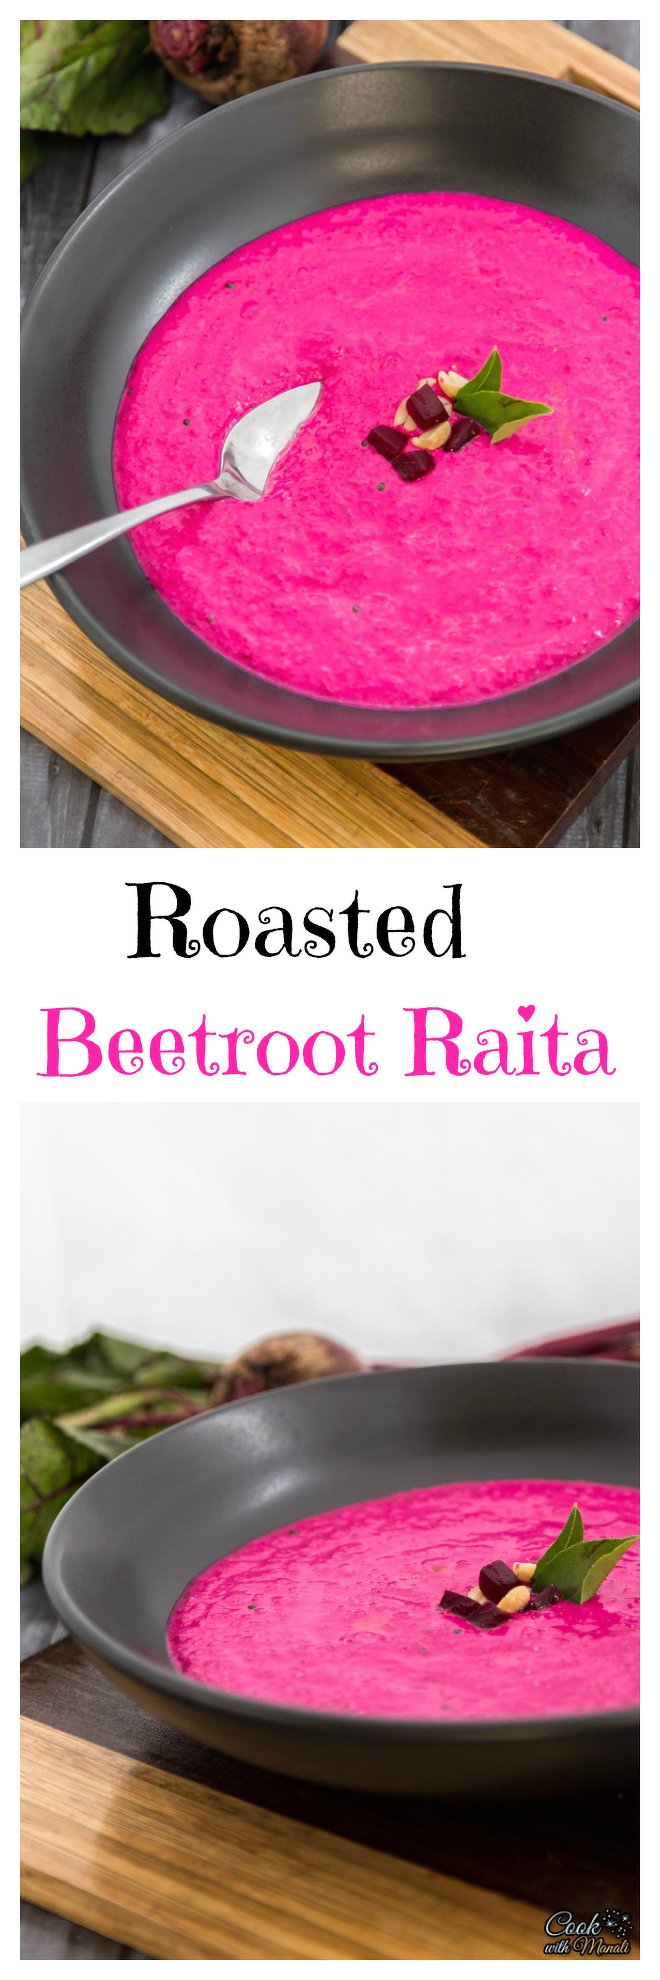 Roasted Beetroot Raita Collage-nocwm